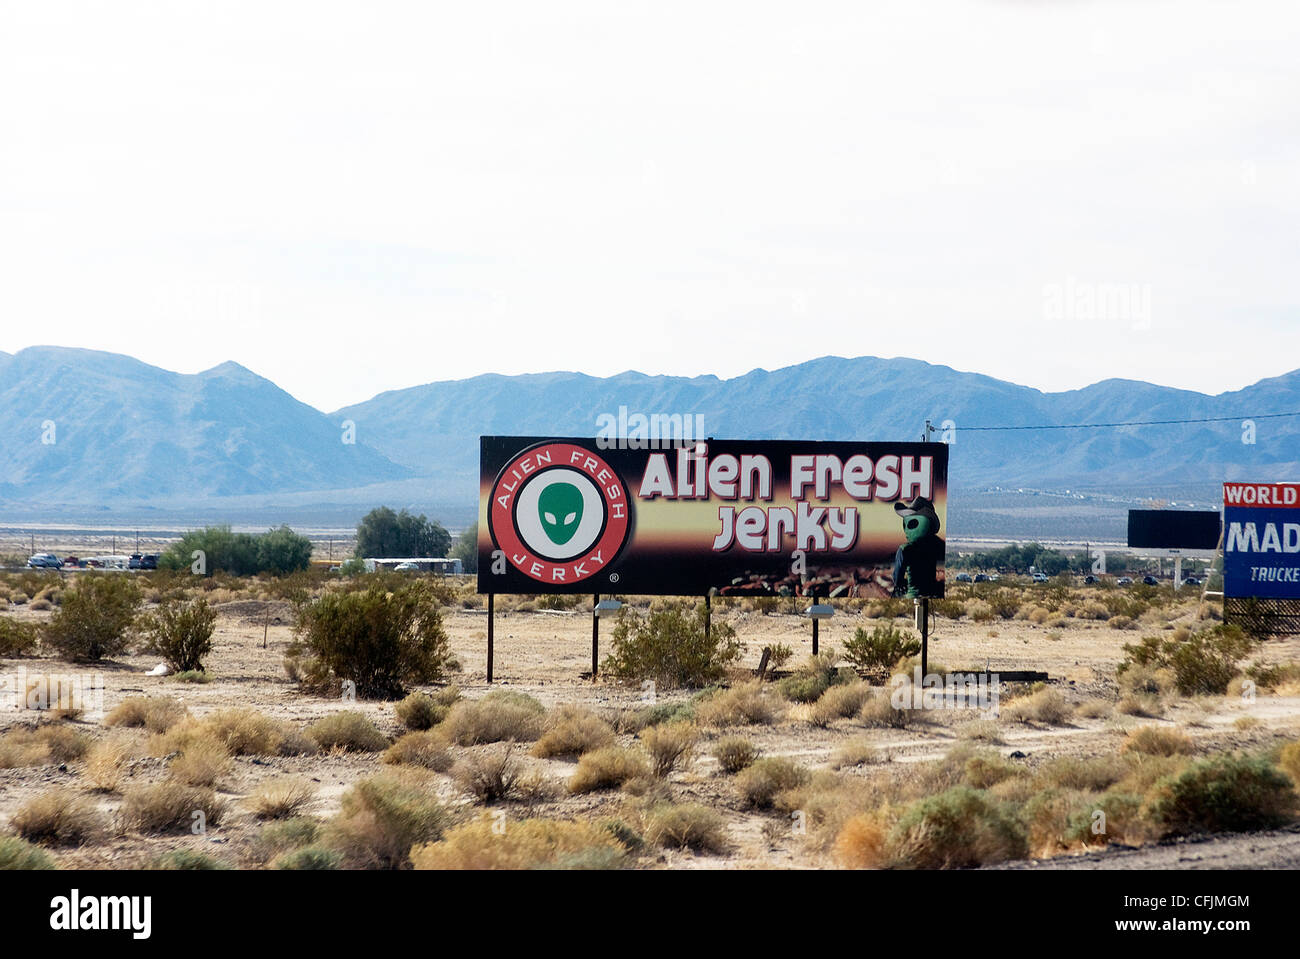 Frischen Alien ruckartig, in der Nähe von Area 51, Baker, Kalifornien, Vereinigte Staaten von Amerika, Nordamerika Stockfoto